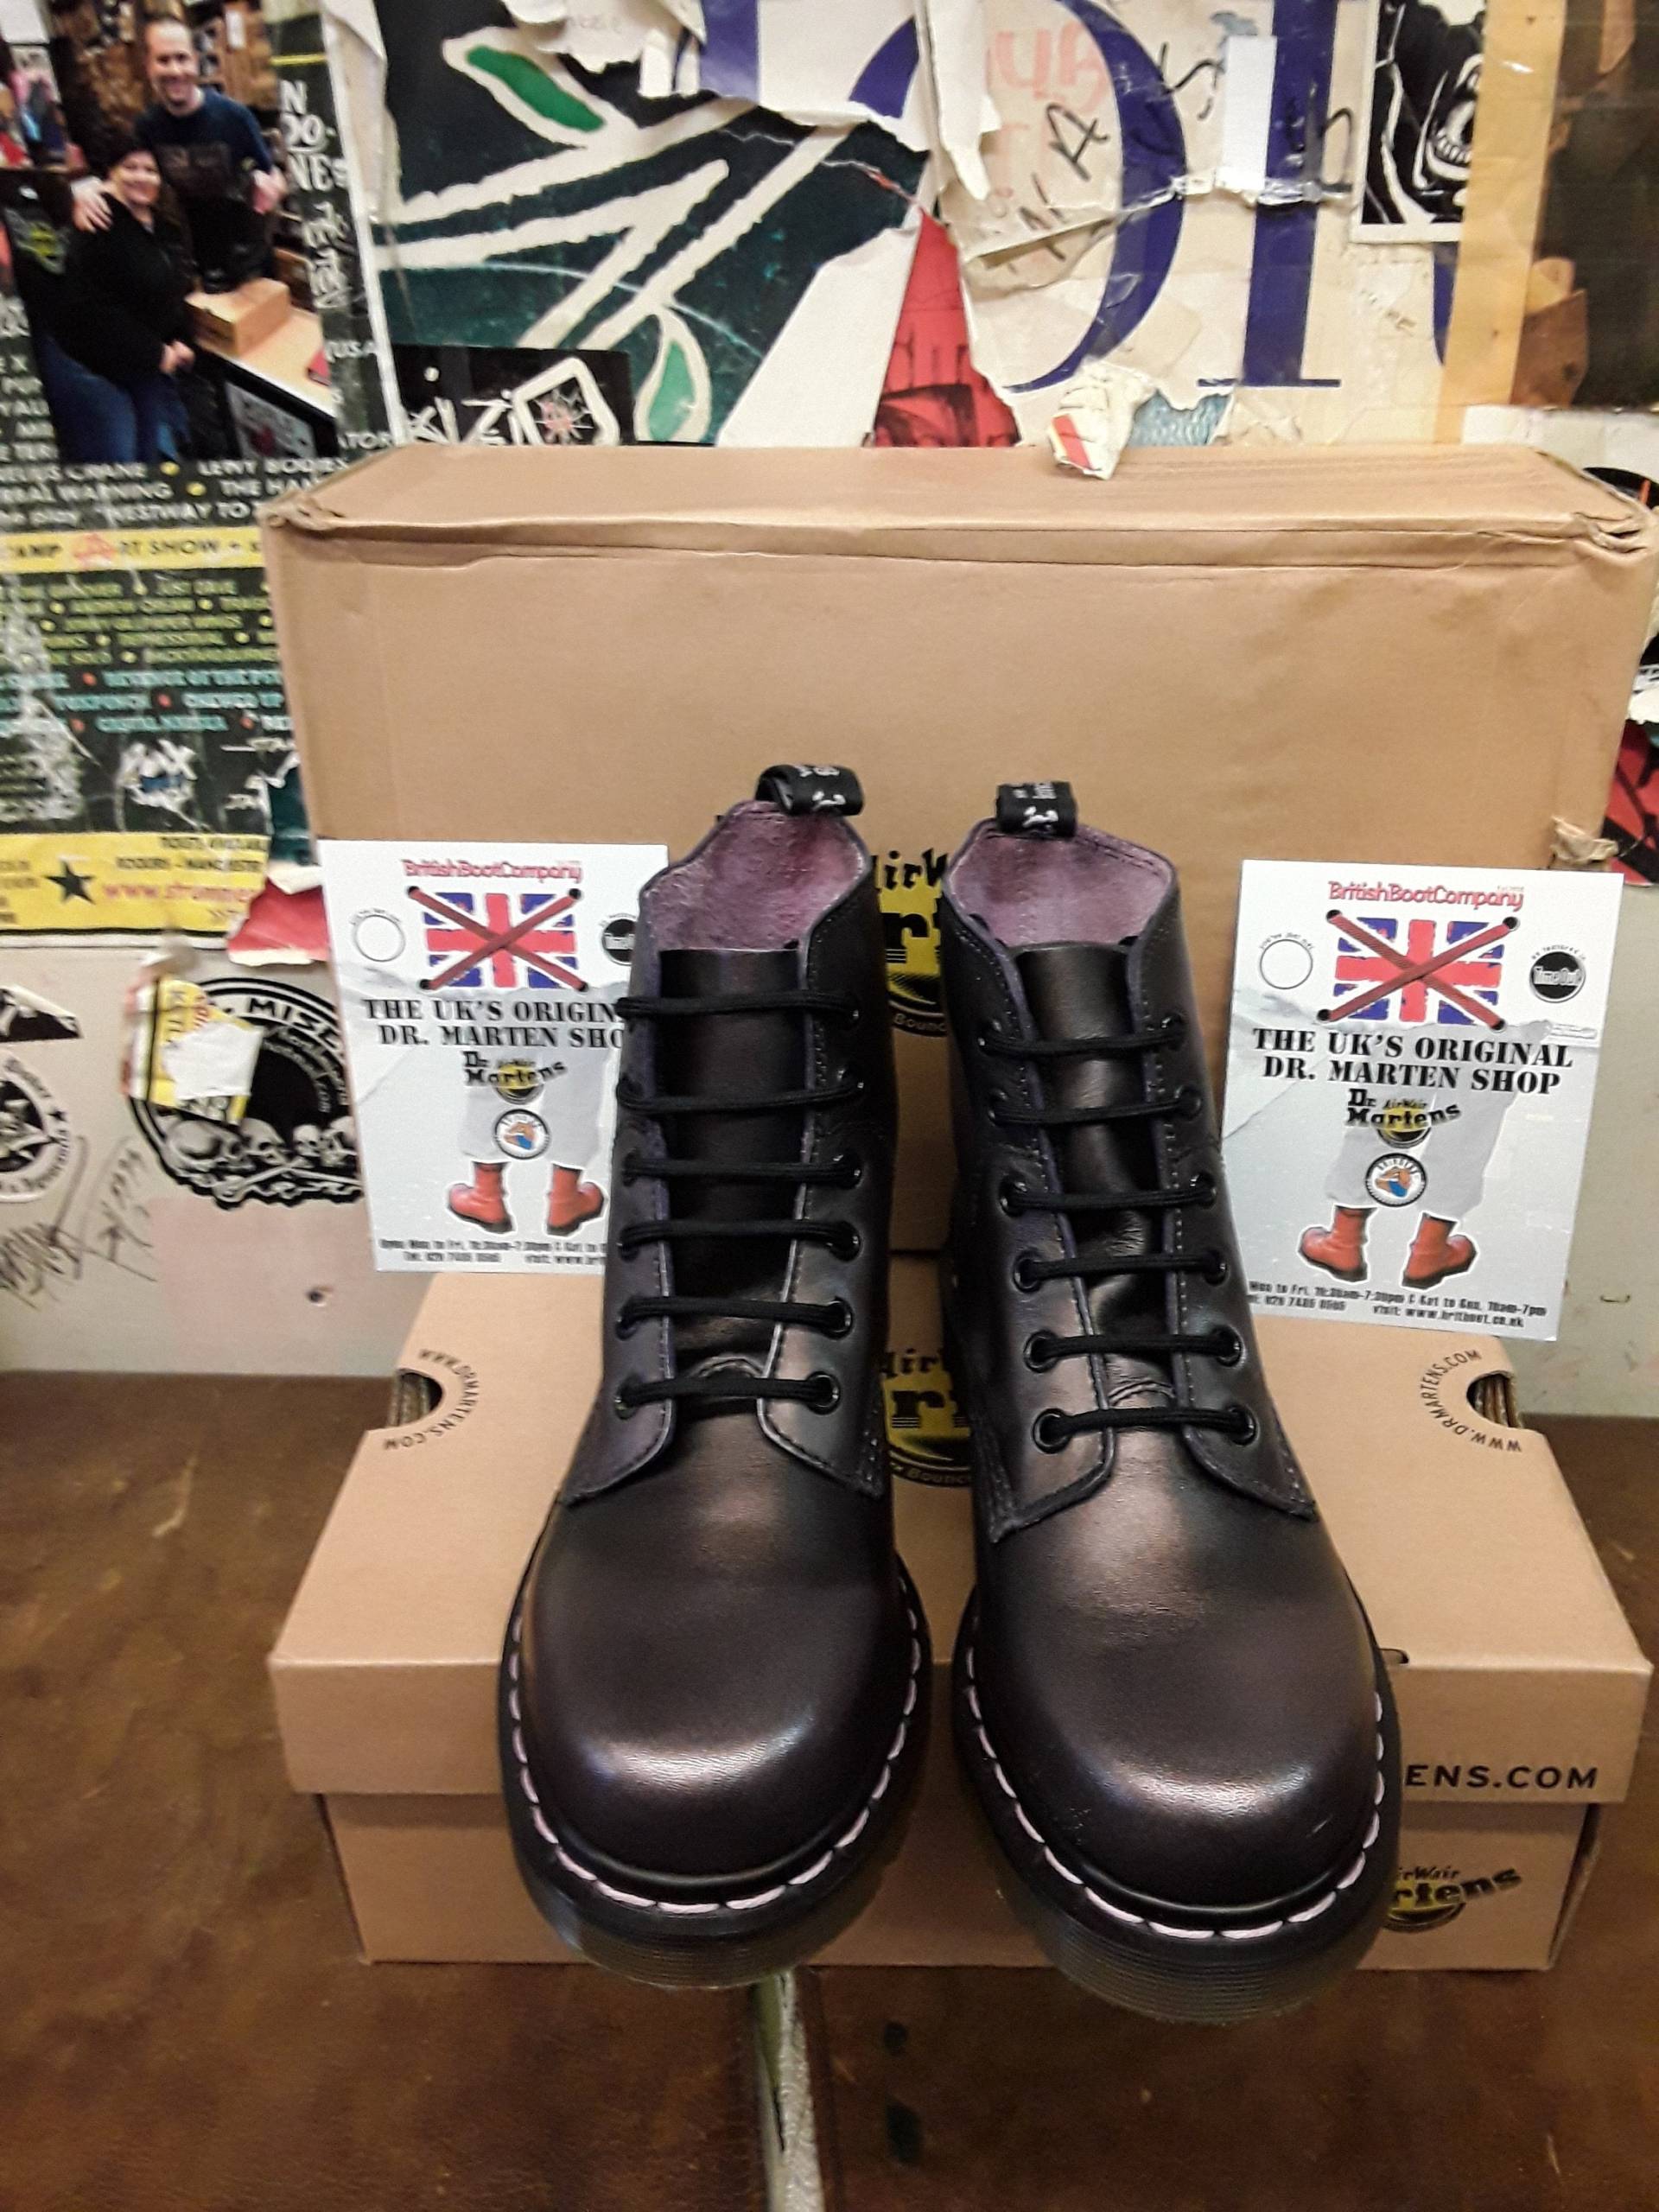 Dr Martens Boots, Gr. Uk3-4, Ankle Schwarz/Pink Leder, 6 Eye 8175 von BritishBootVintage